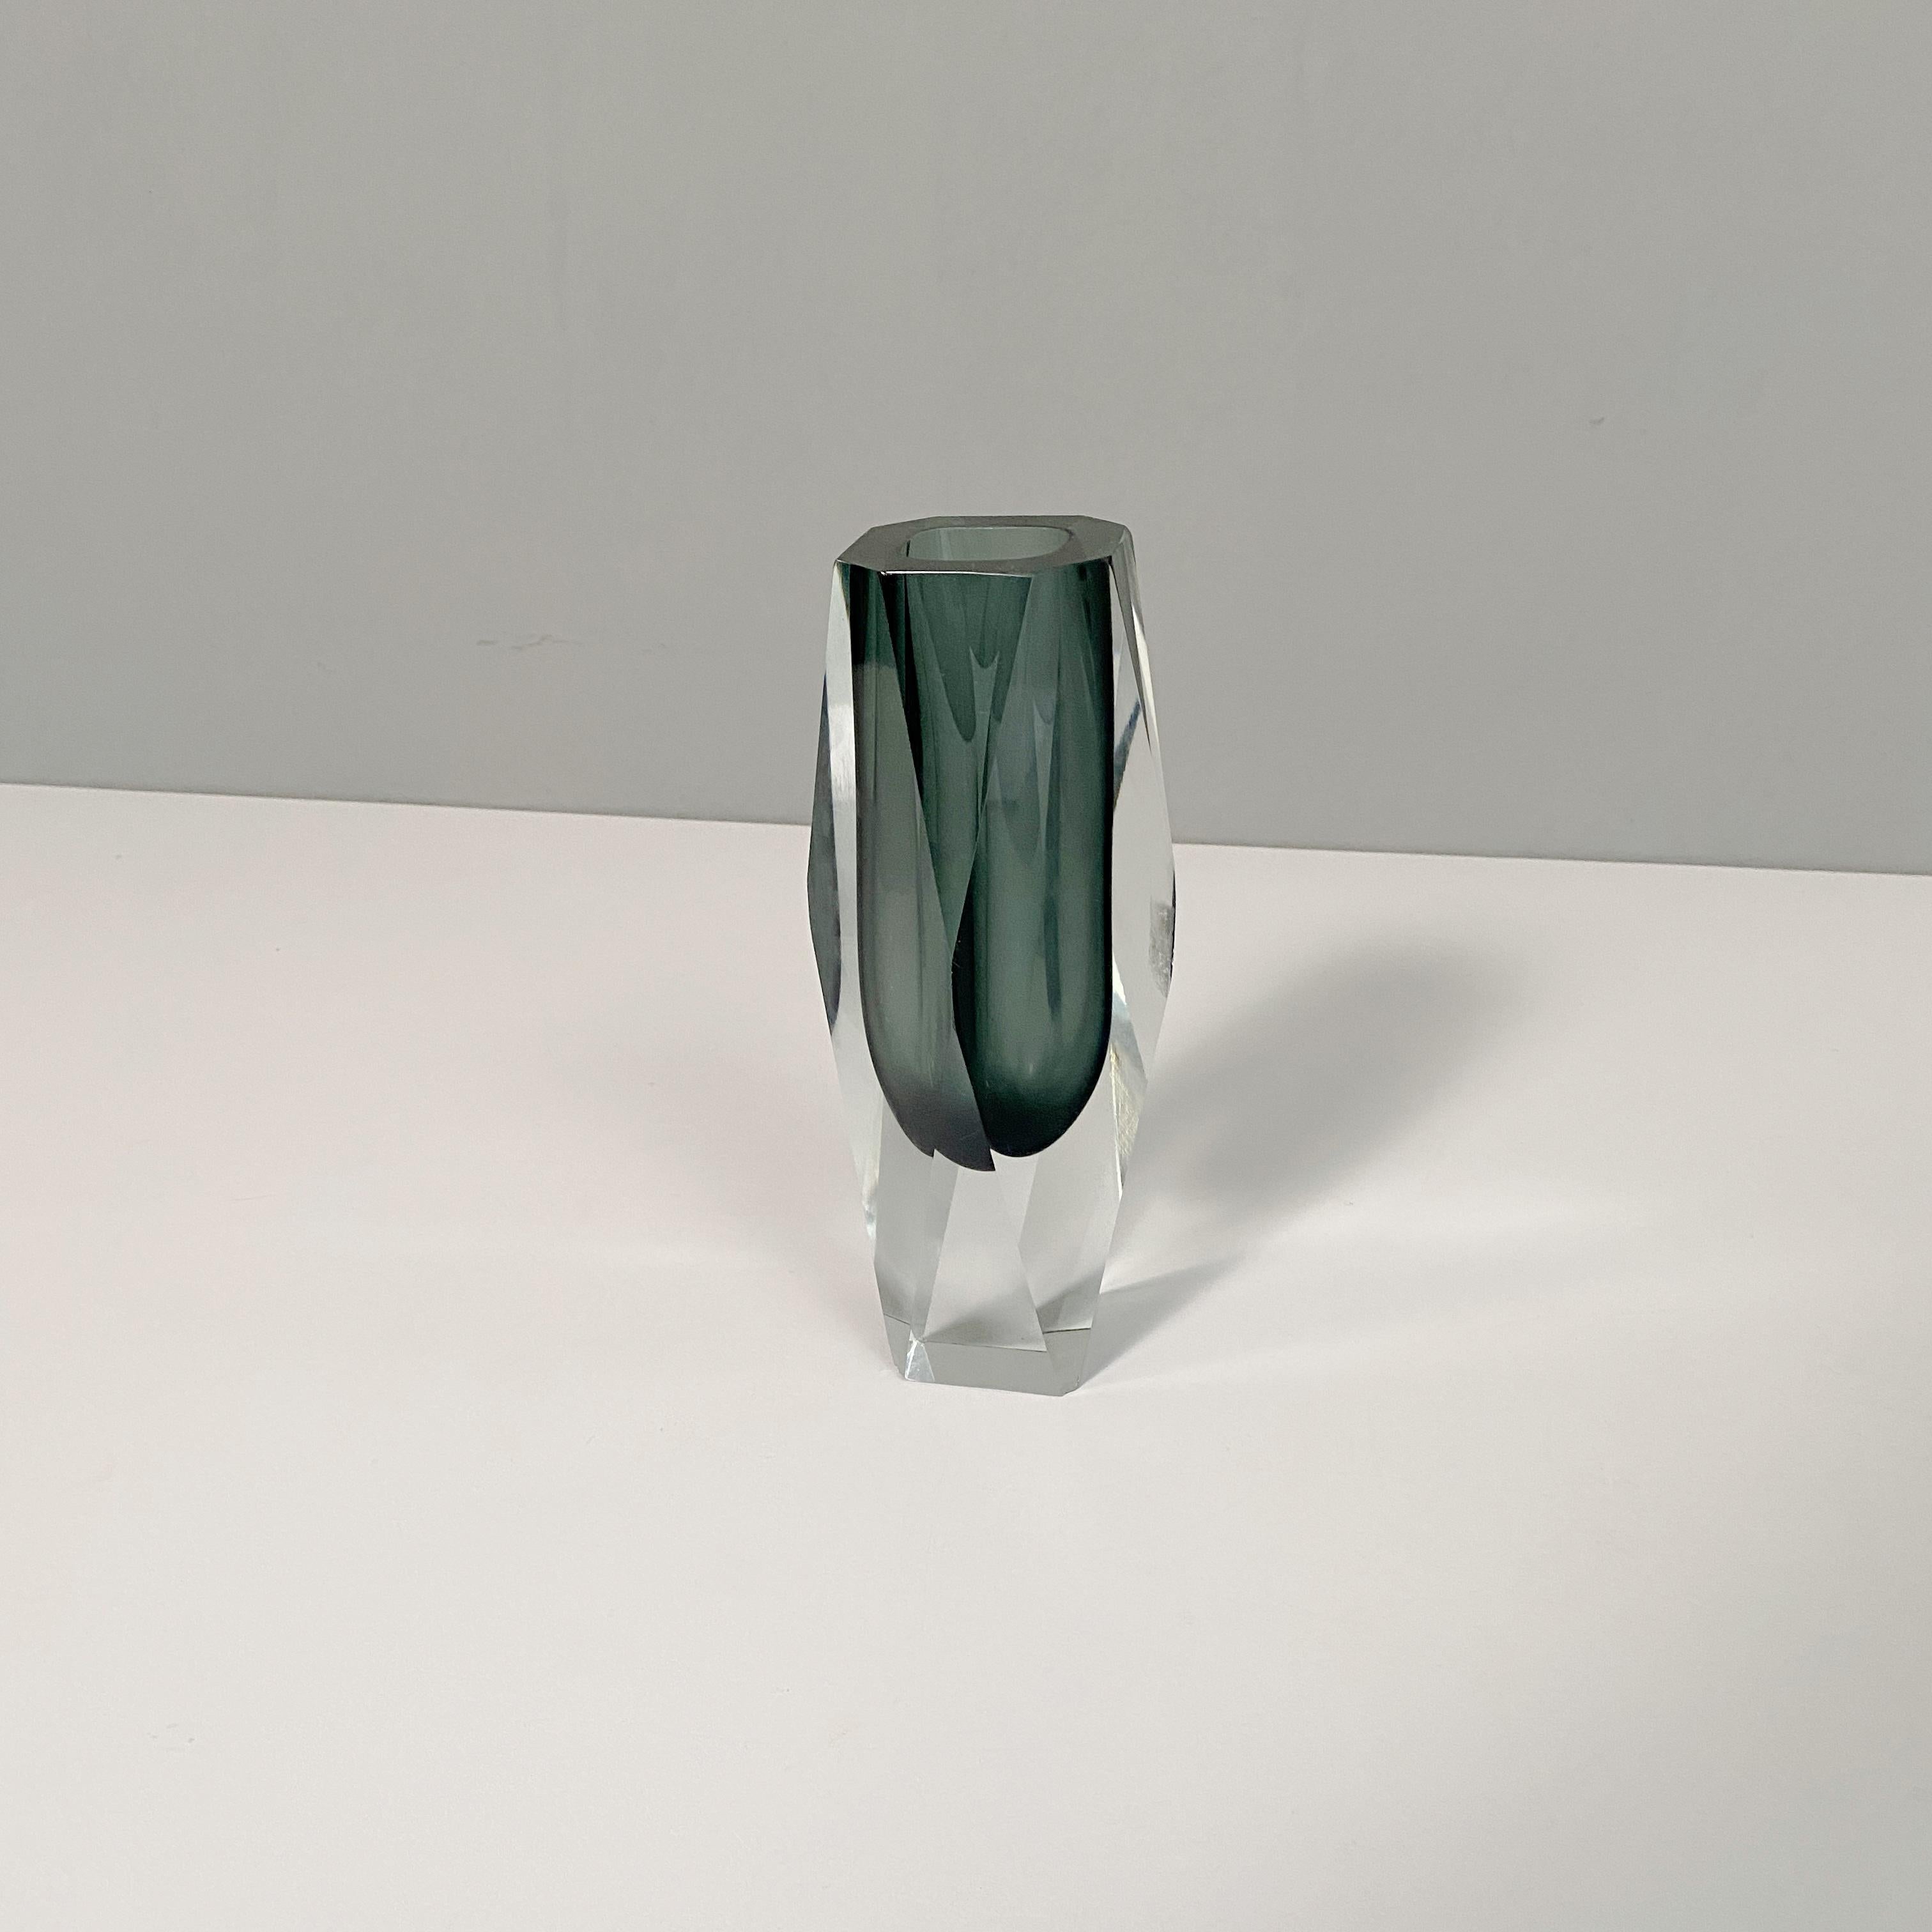 Graue Vase aus Muranoglas, 1970er Jahre
Graue Vase aus Muranoglas aus der Serie I Sommersi.

1970s 

Diese fantastische Serie von Murano Glas Vase mit verschiedenen farbigen Schattierungen, ist die 